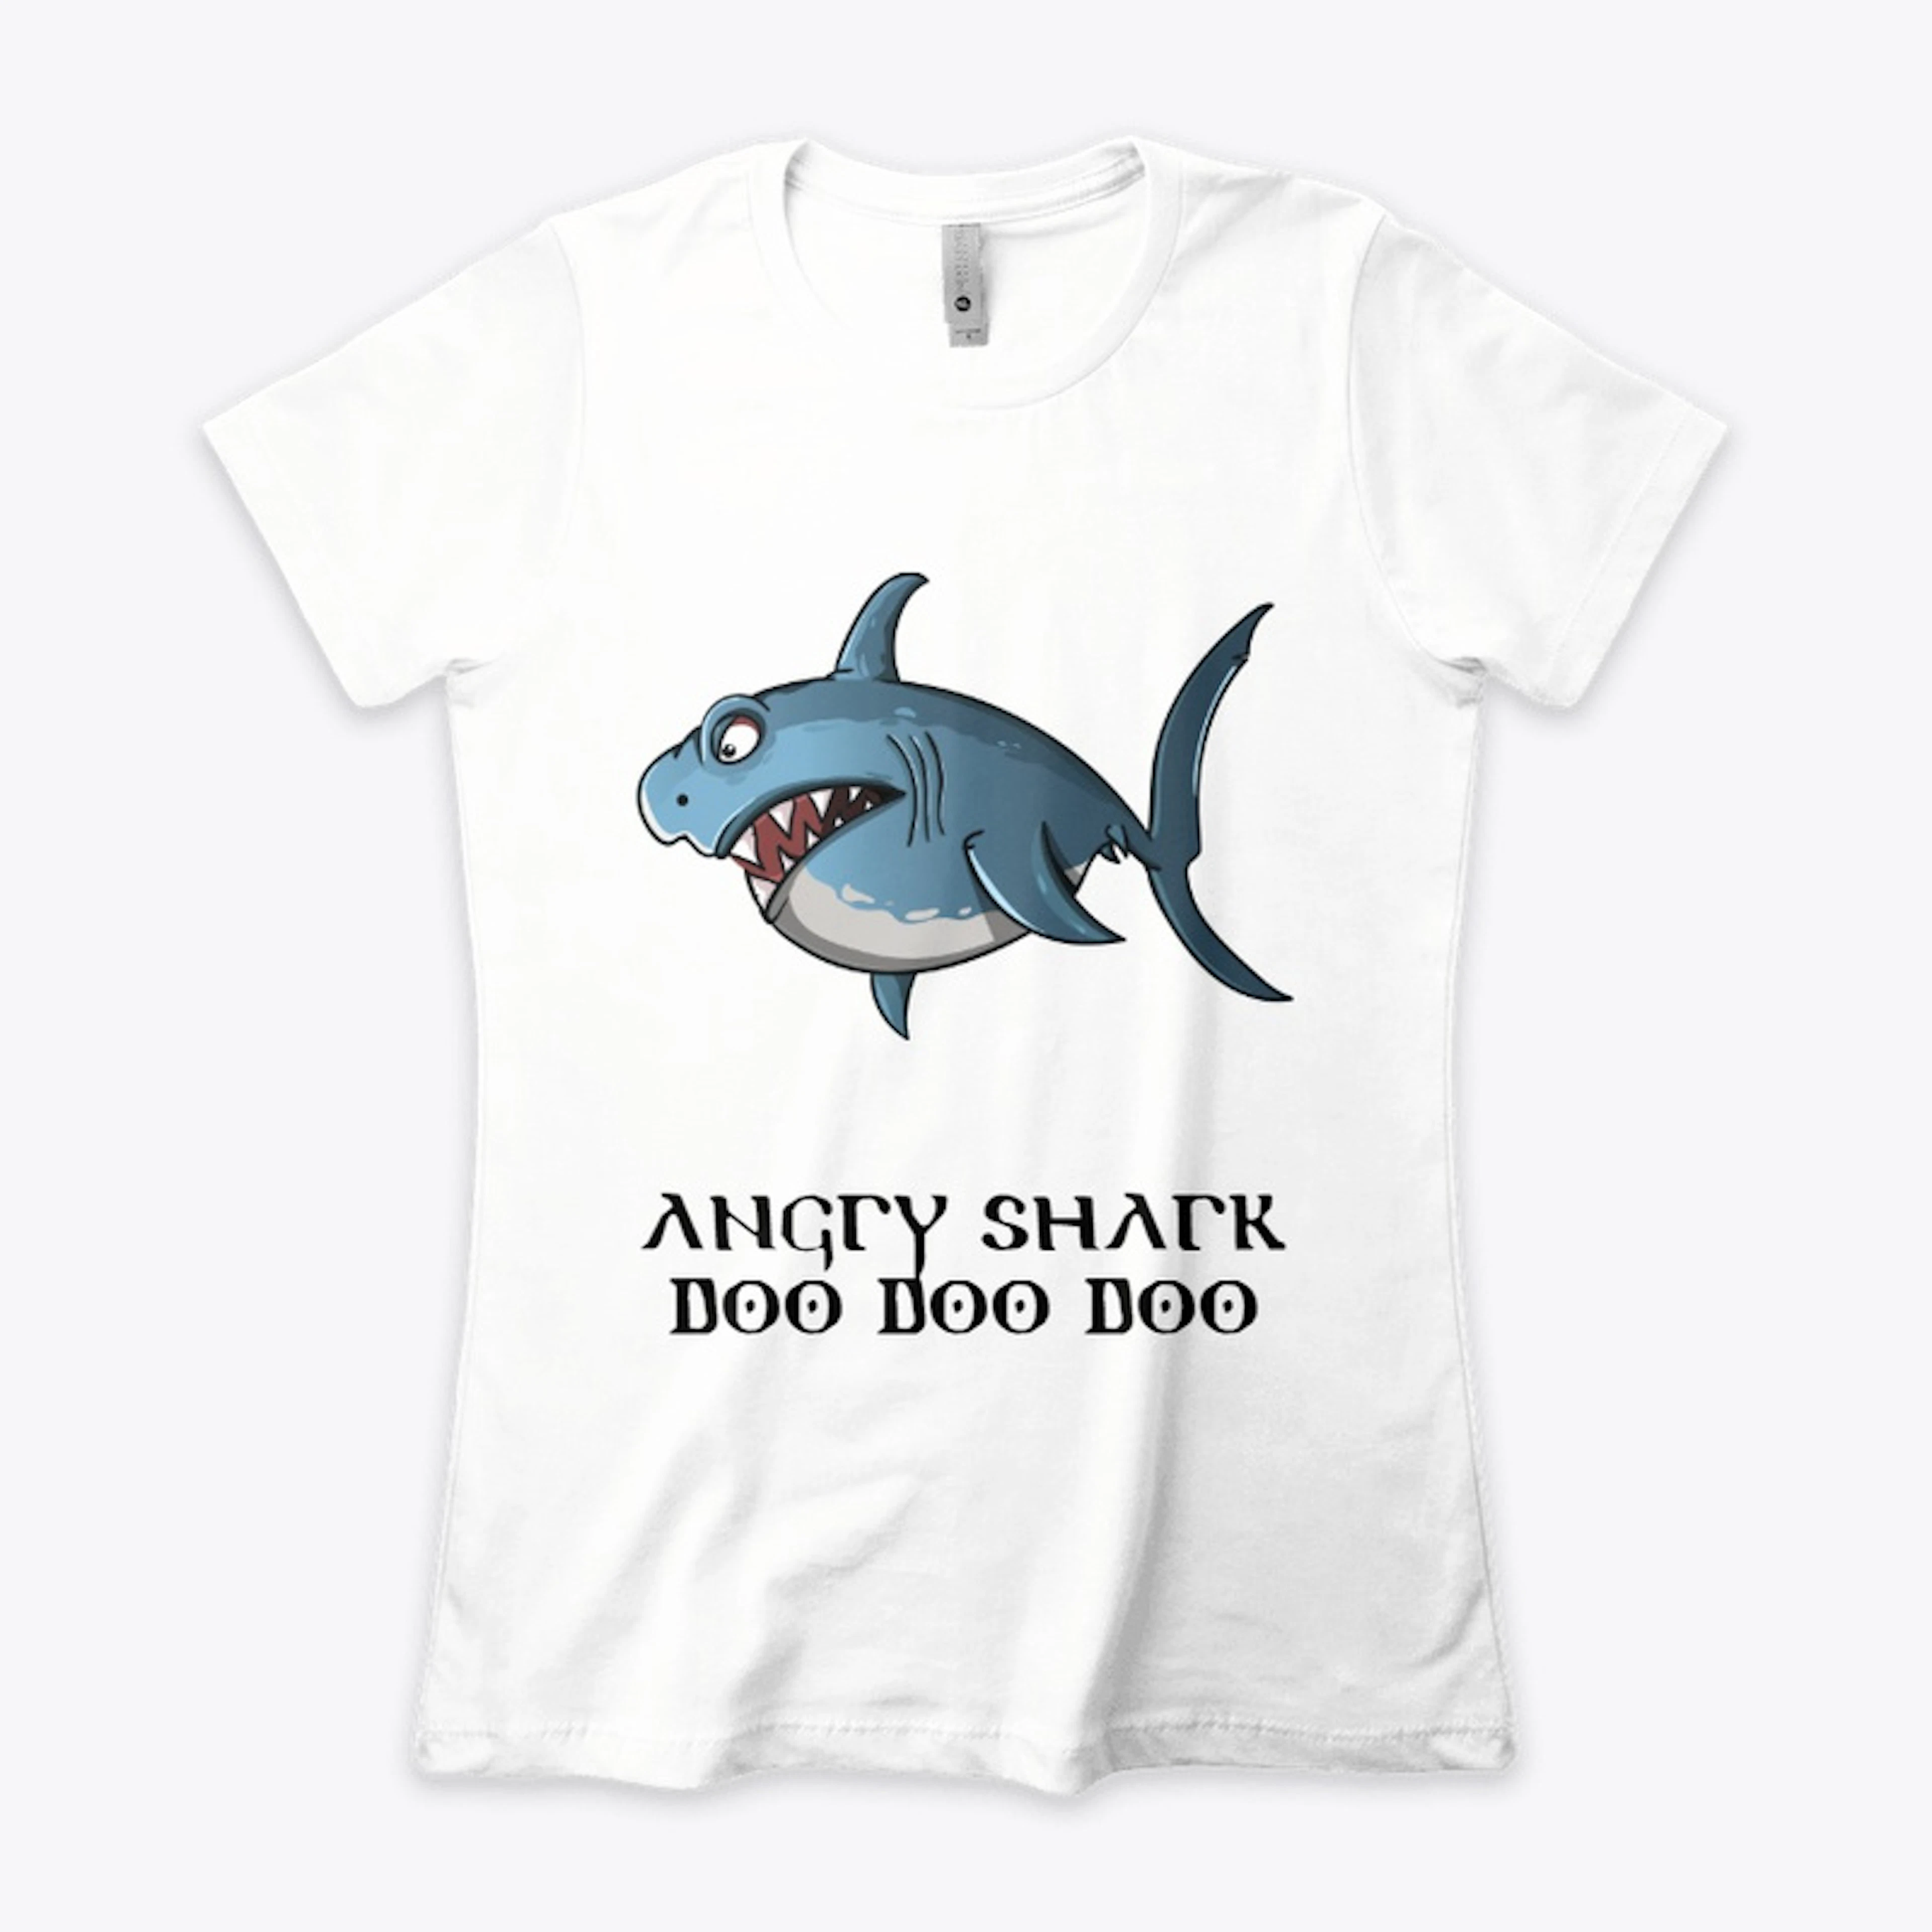 The Angry Shark